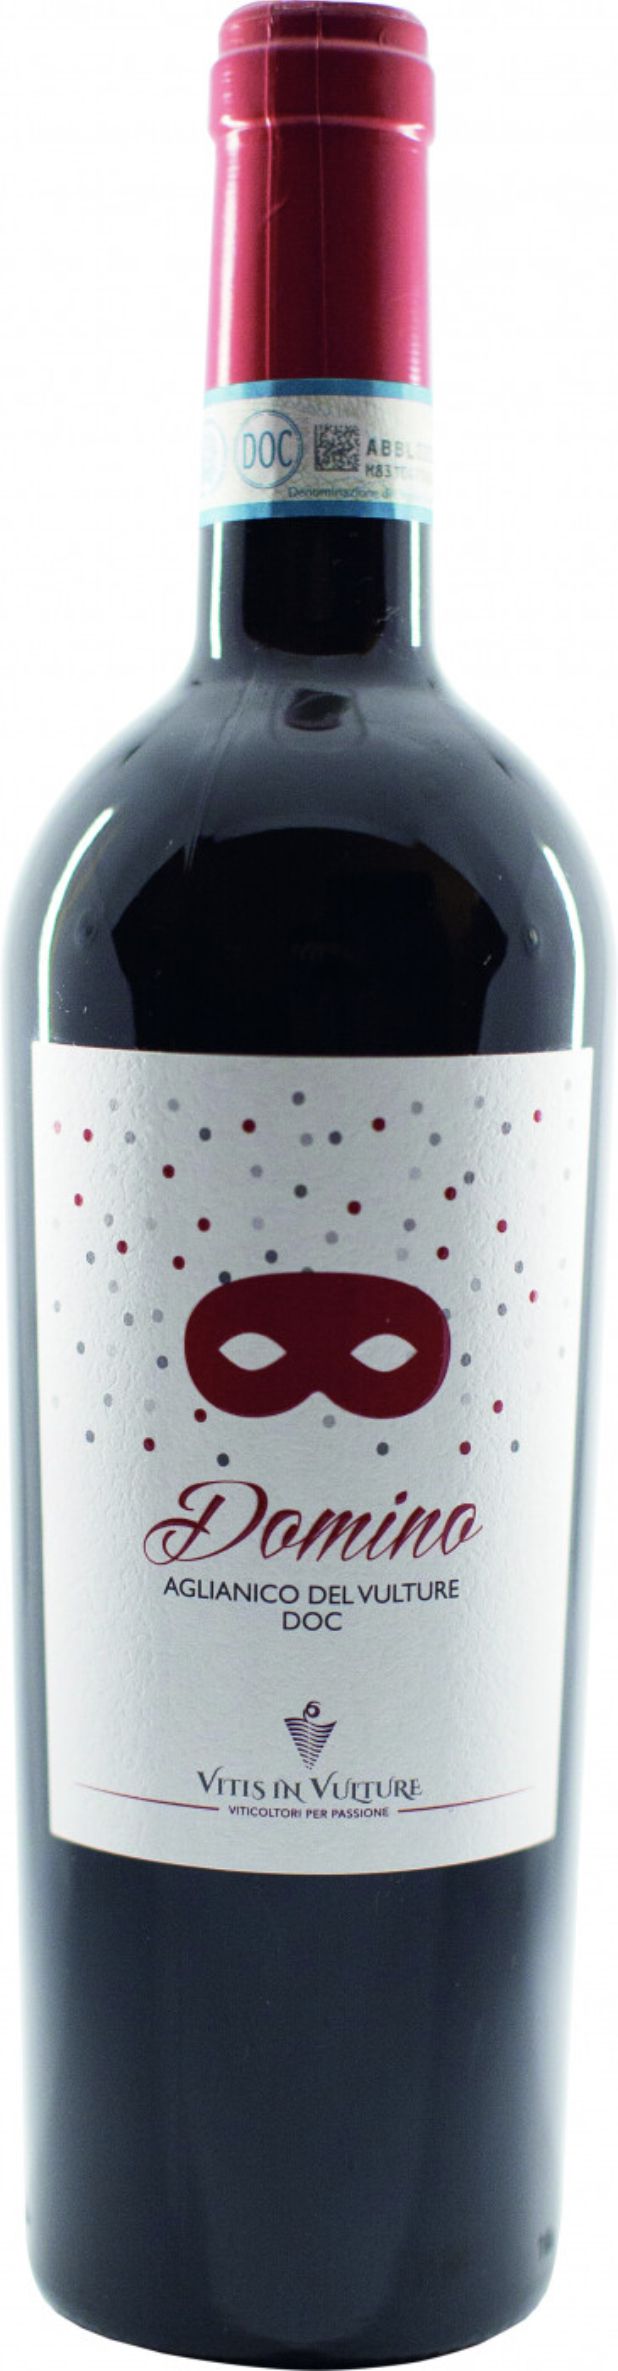 Вино защищенного наименования места происхождения регион Базиликата красное сухое, сод. сп. 13%об., в с/бут емк 0,75л: А